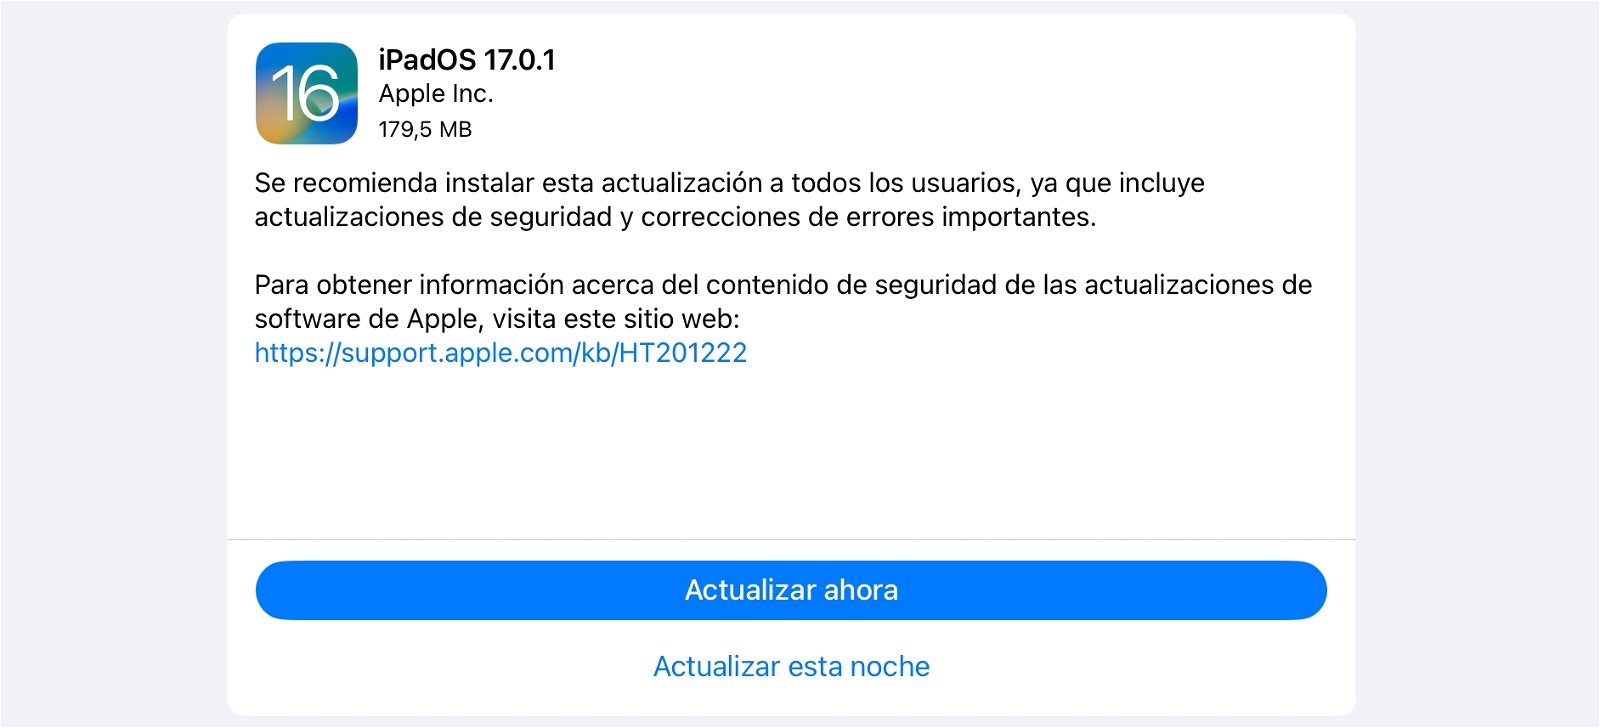 iPadOS 17.0.1